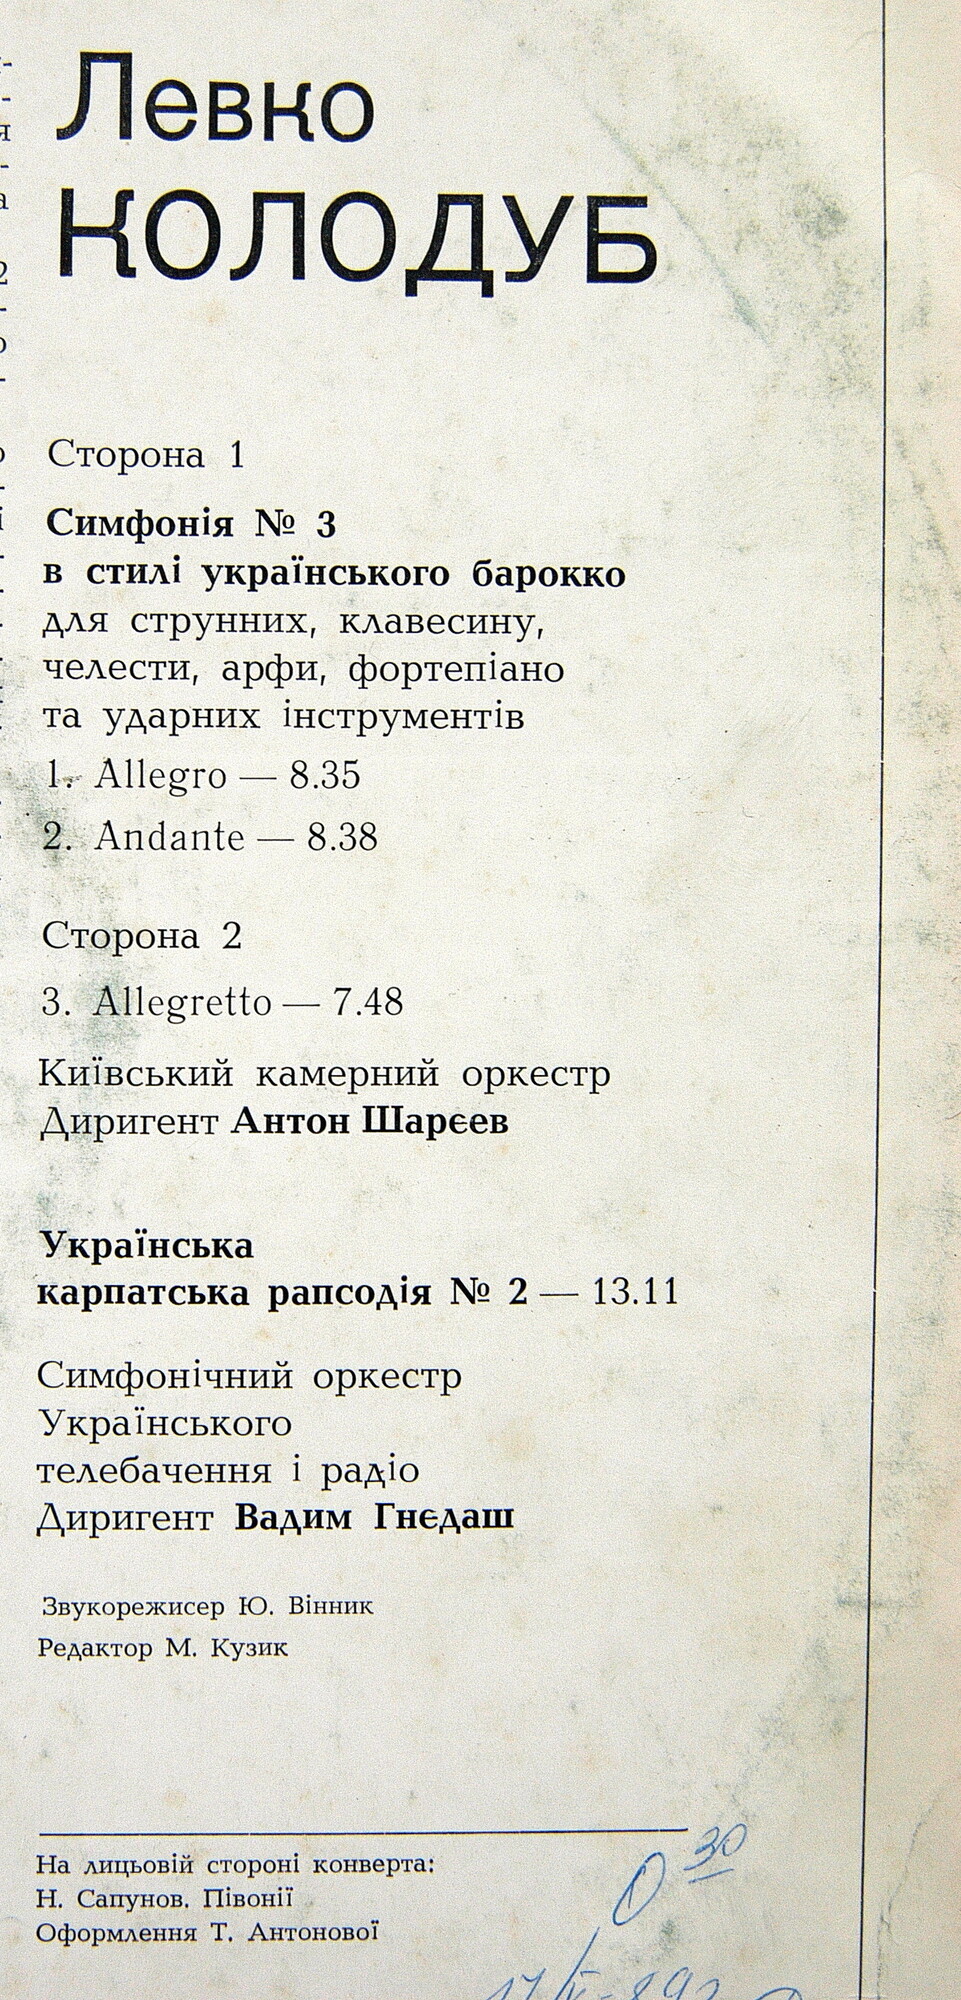 Л. КОЛОДУБ (1930)